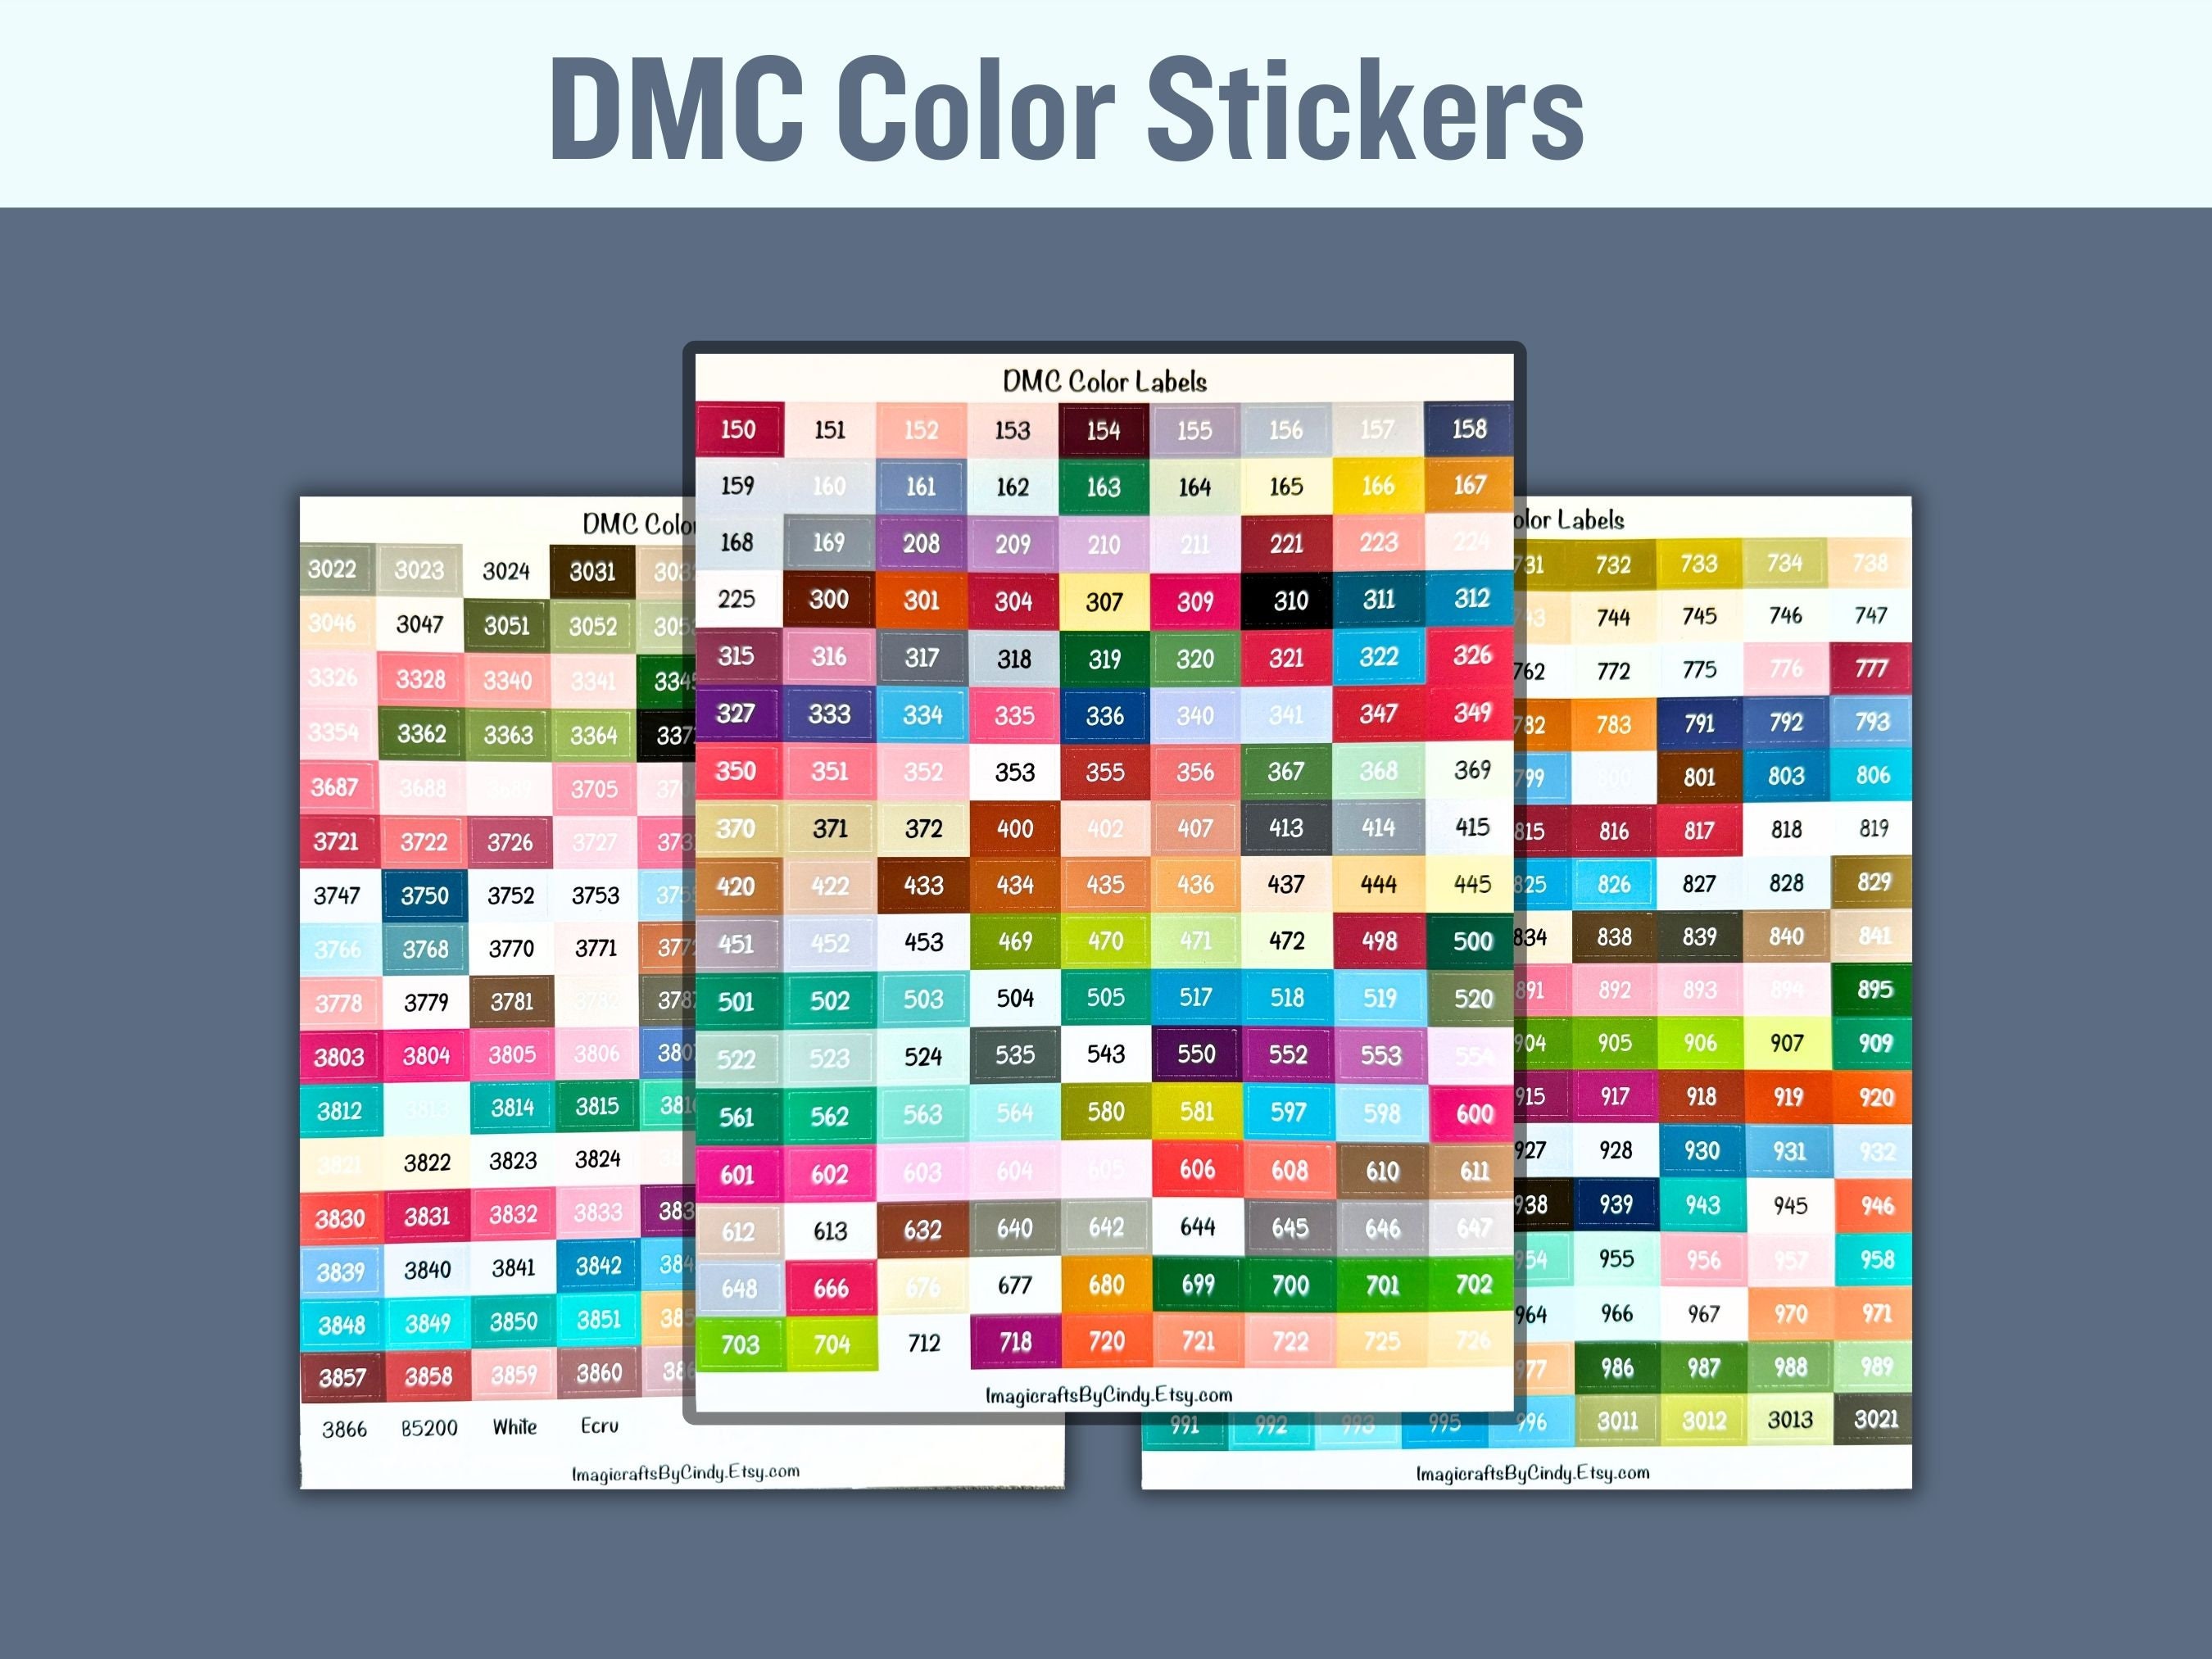 Diamond painting DMC color printable Chart